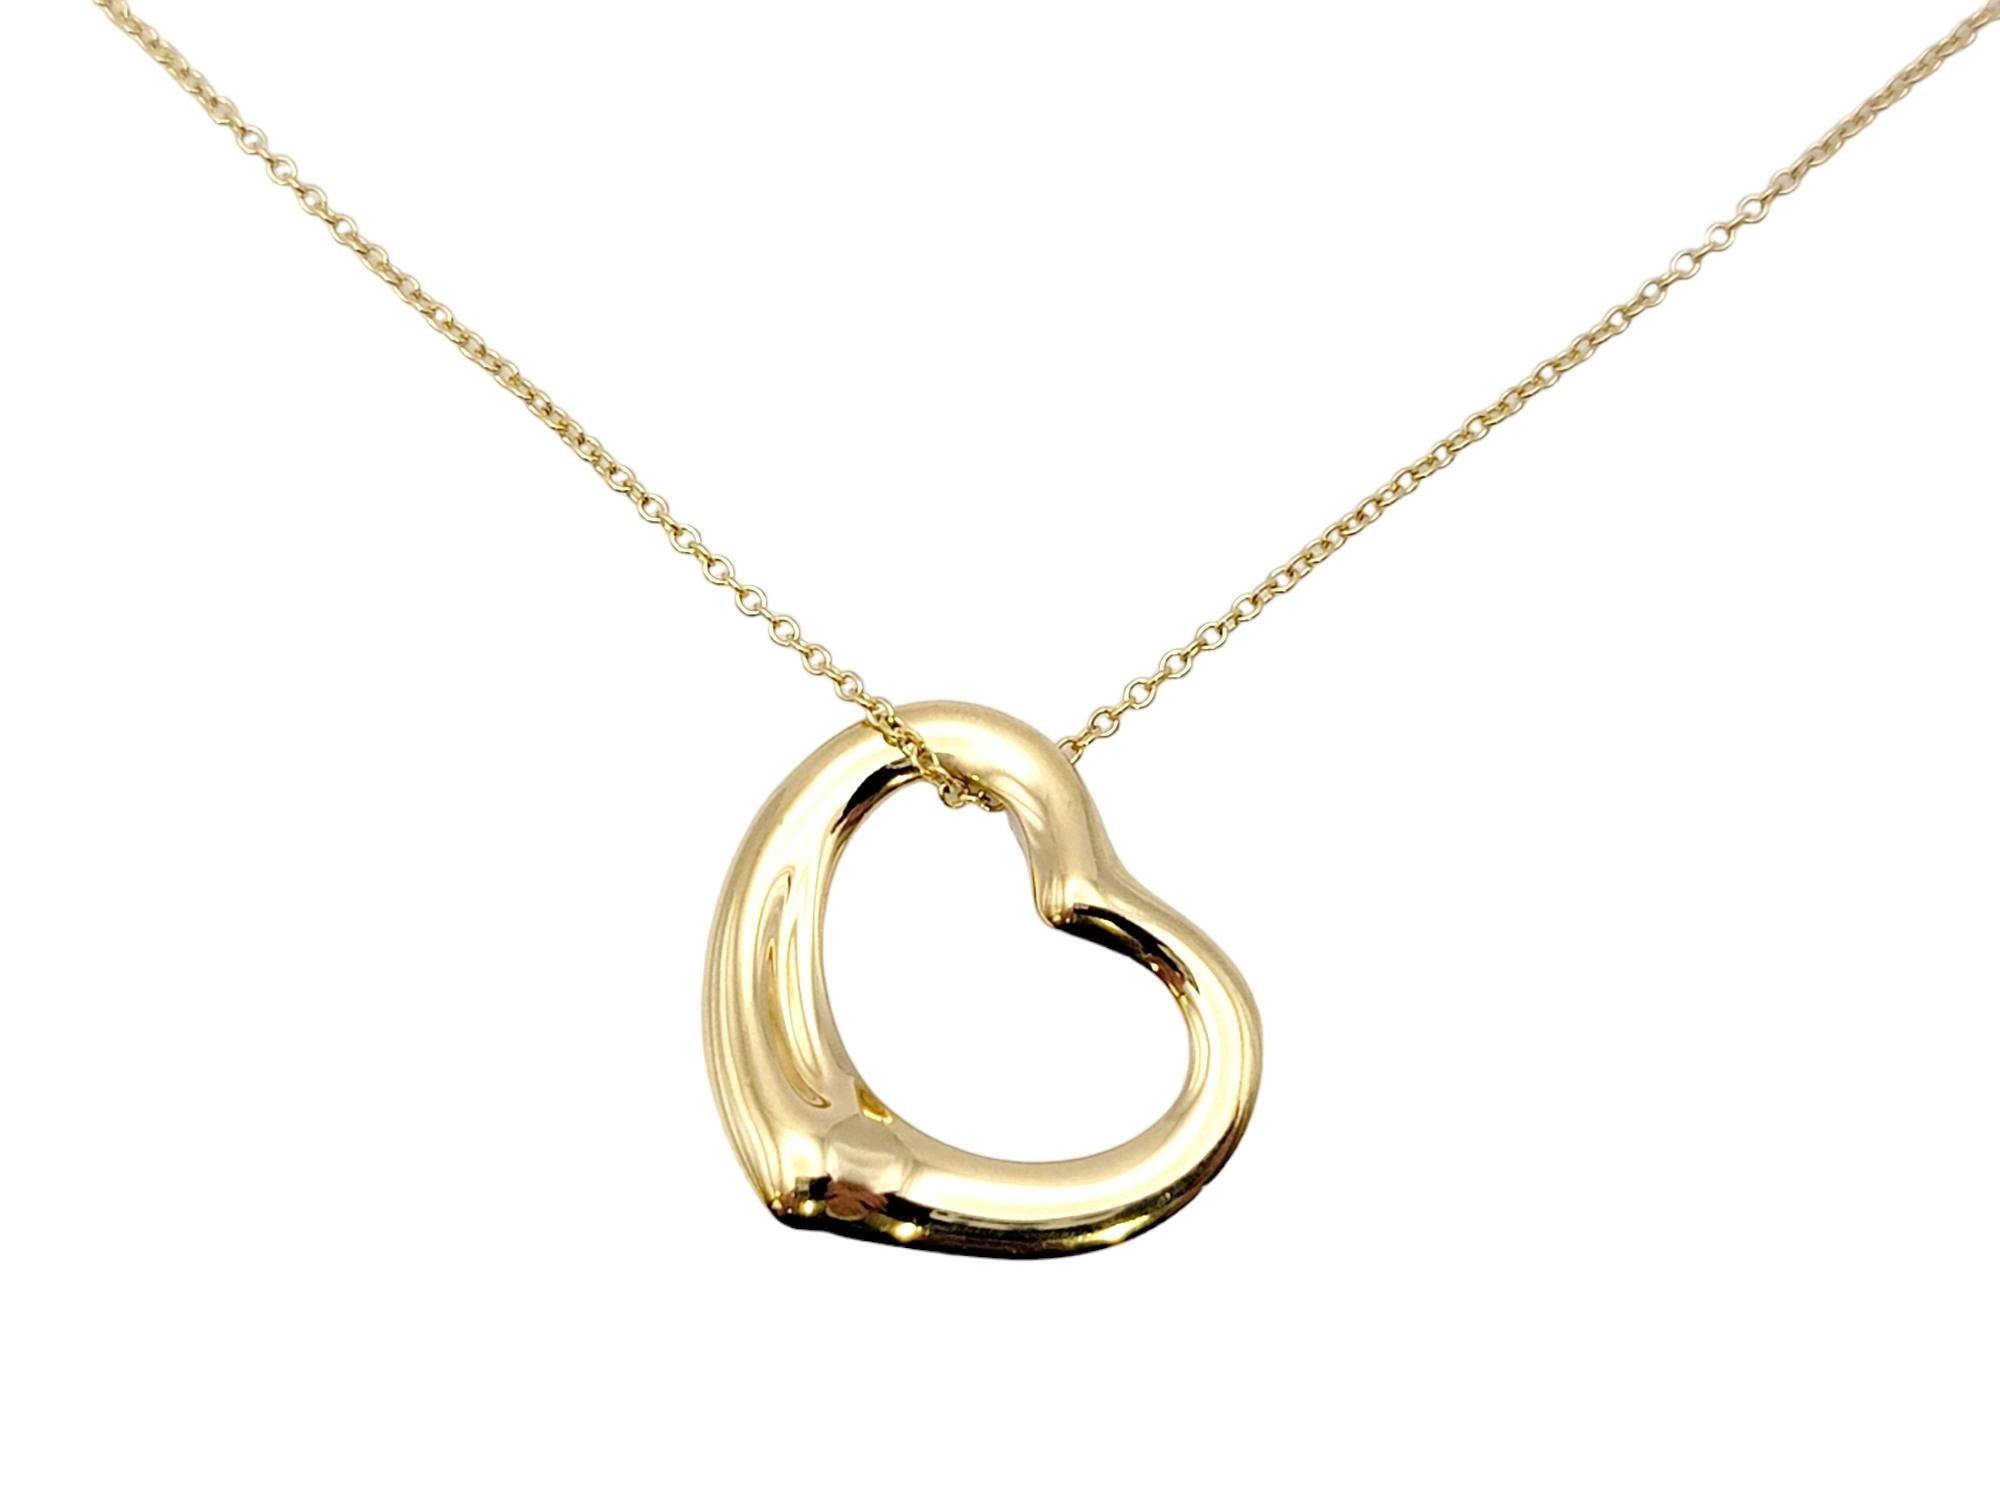 Le magnifique collier à pendentif en forme de cœur ouvert d'Elega Peretti pour Tiffany & Co. respire l'élégance minimaliste. Le design intemporel combiné à la chaude monture en or jaune en fait une pièce que vous admirerez pendant des années. 

Ce